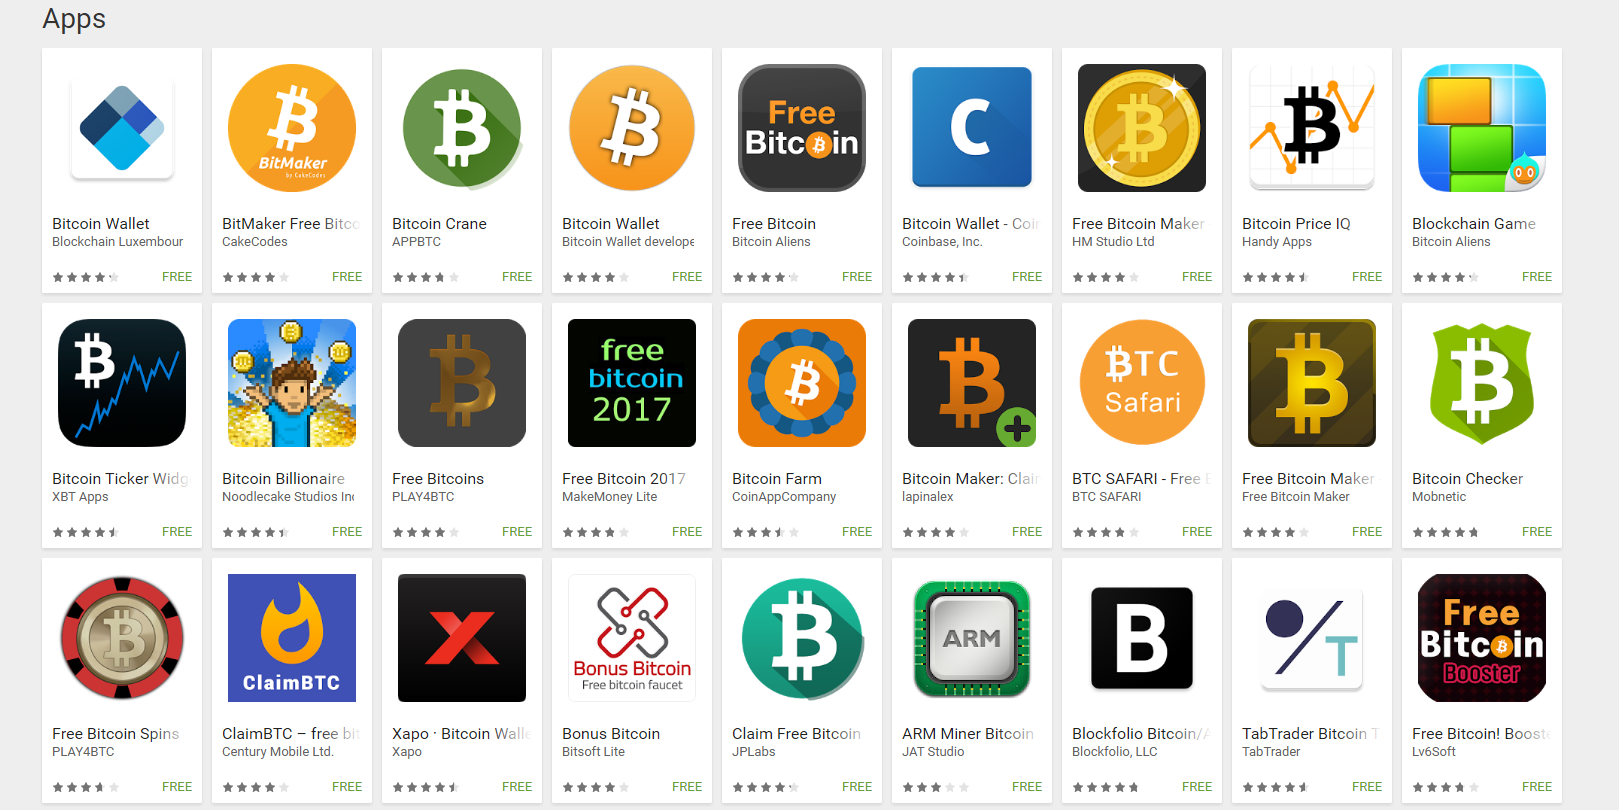 Free bitcoins app betalen met bitcoins value